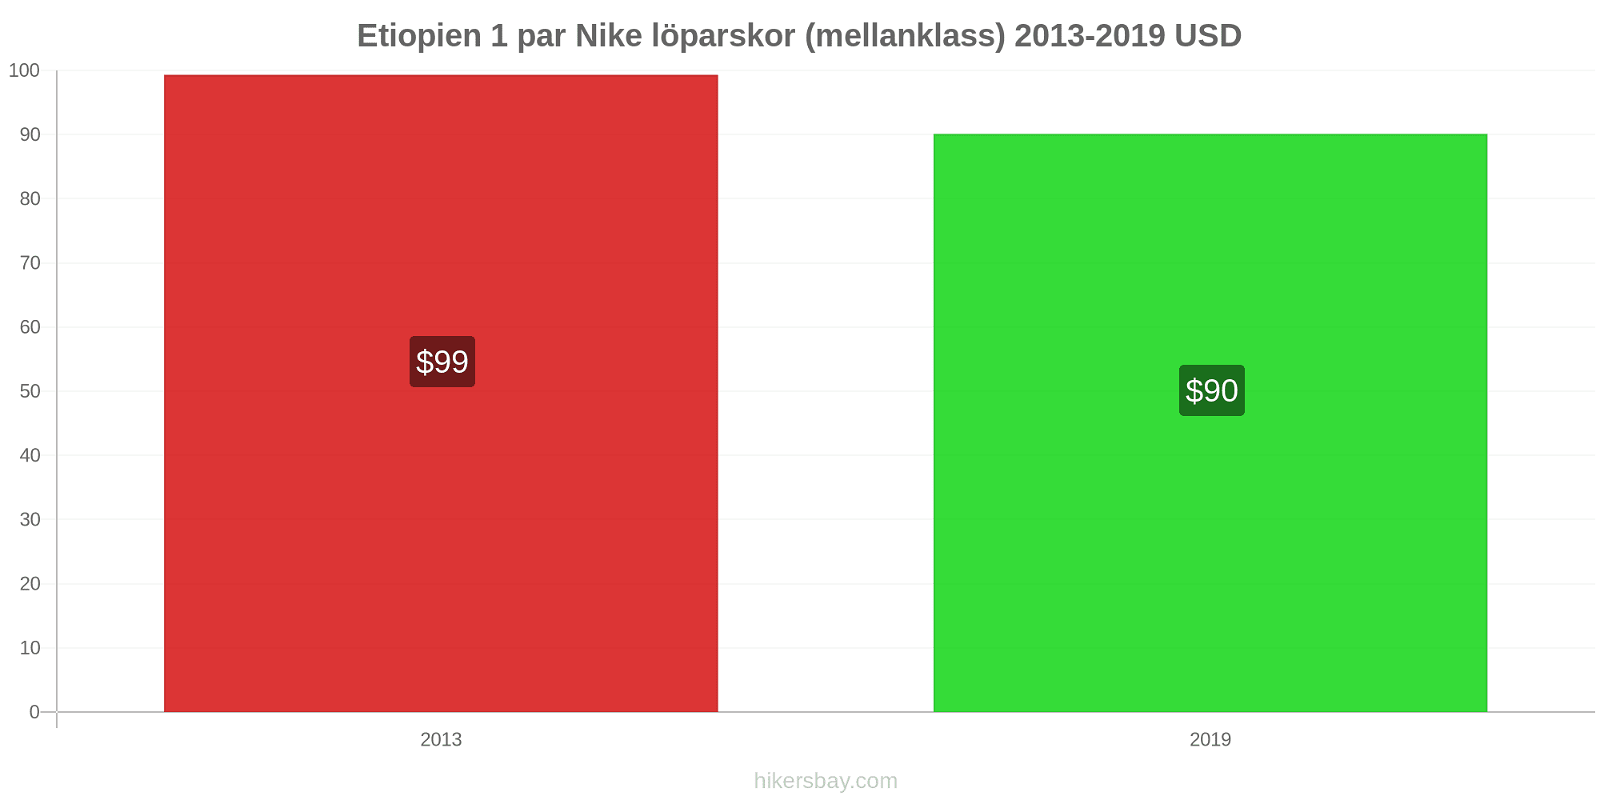 Etiopien prisförändringar 1 par Nike löparskor (mellanklass) hikersbay.com